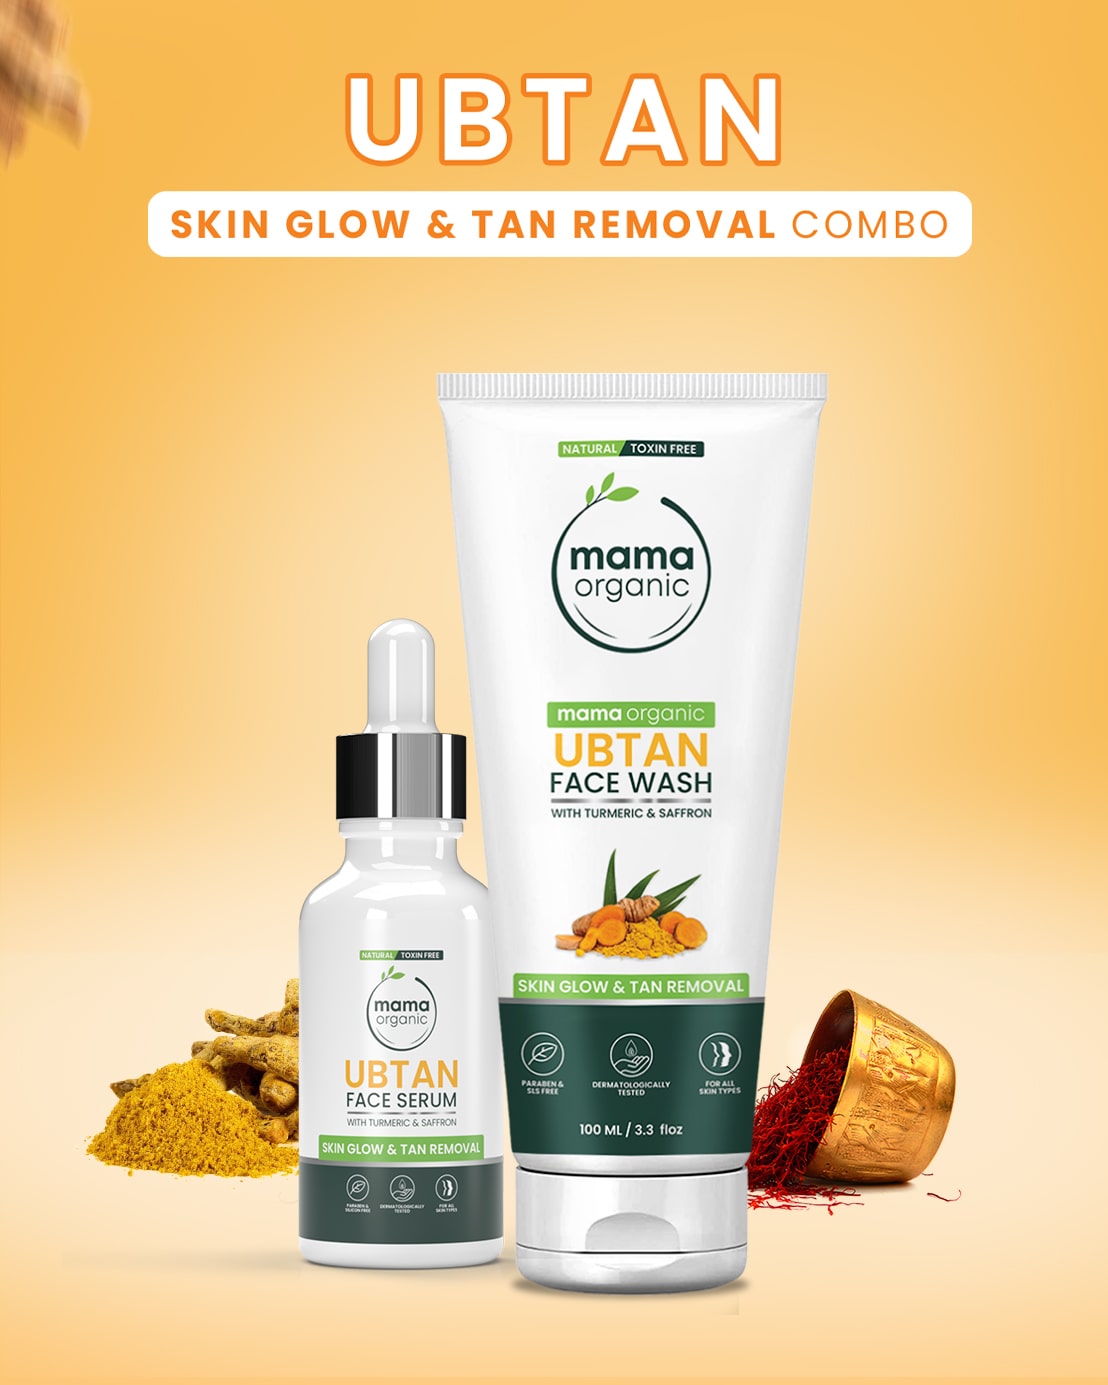 Ubtan Skin Glow & Tan Removal Combo